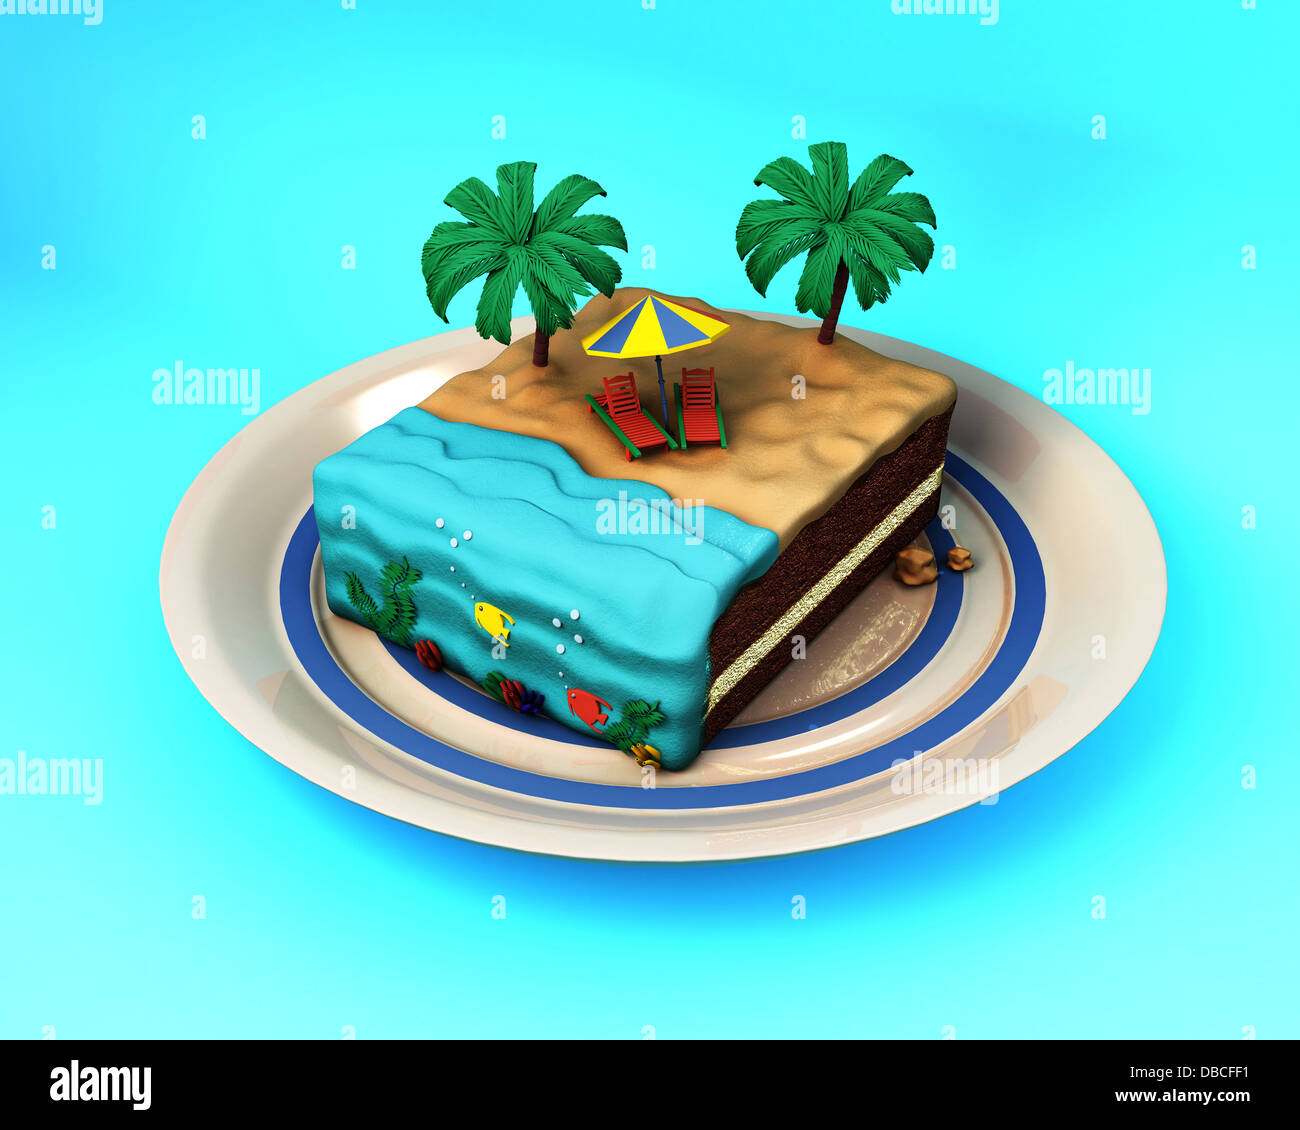 Image d'illustration de gâteau avec concept plage représentant locations Banque D'Images